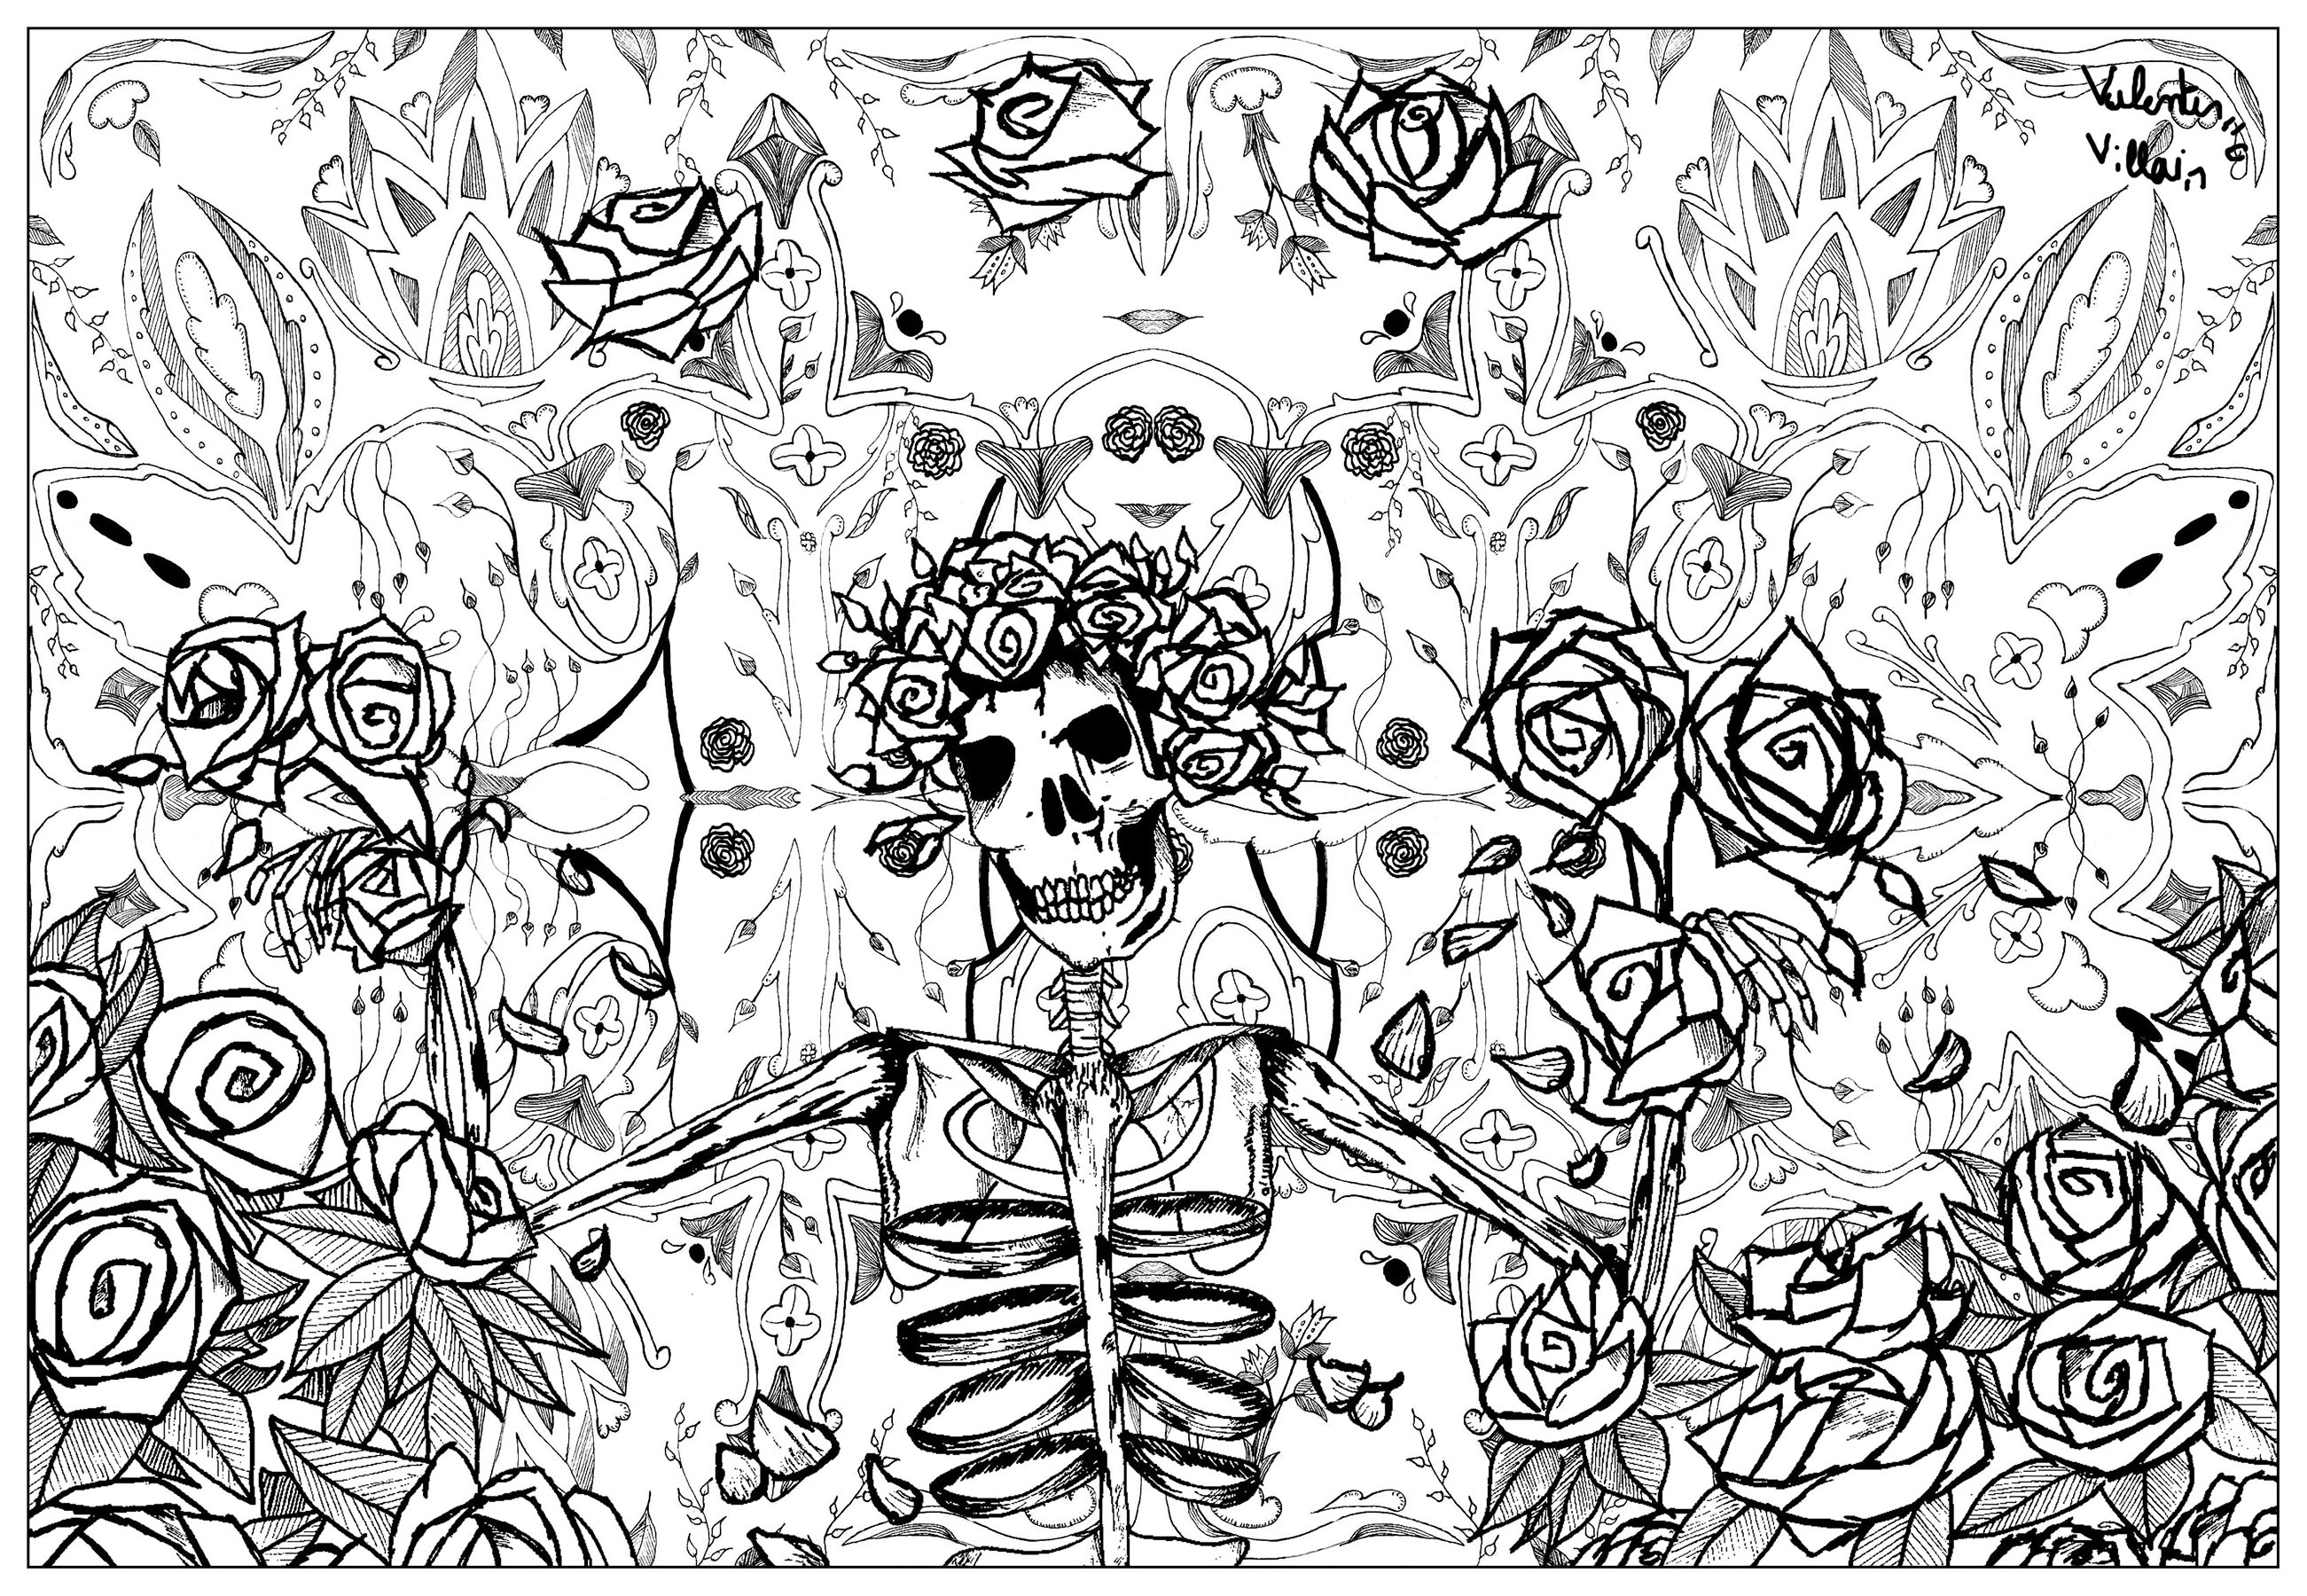 Originalillustration, inspiriert von den Bildern der amerikanischen Rockband Grateful Dead. Grateful Dead gilt als einer der Hauptvertreter der psychedelischen Bewegung.
